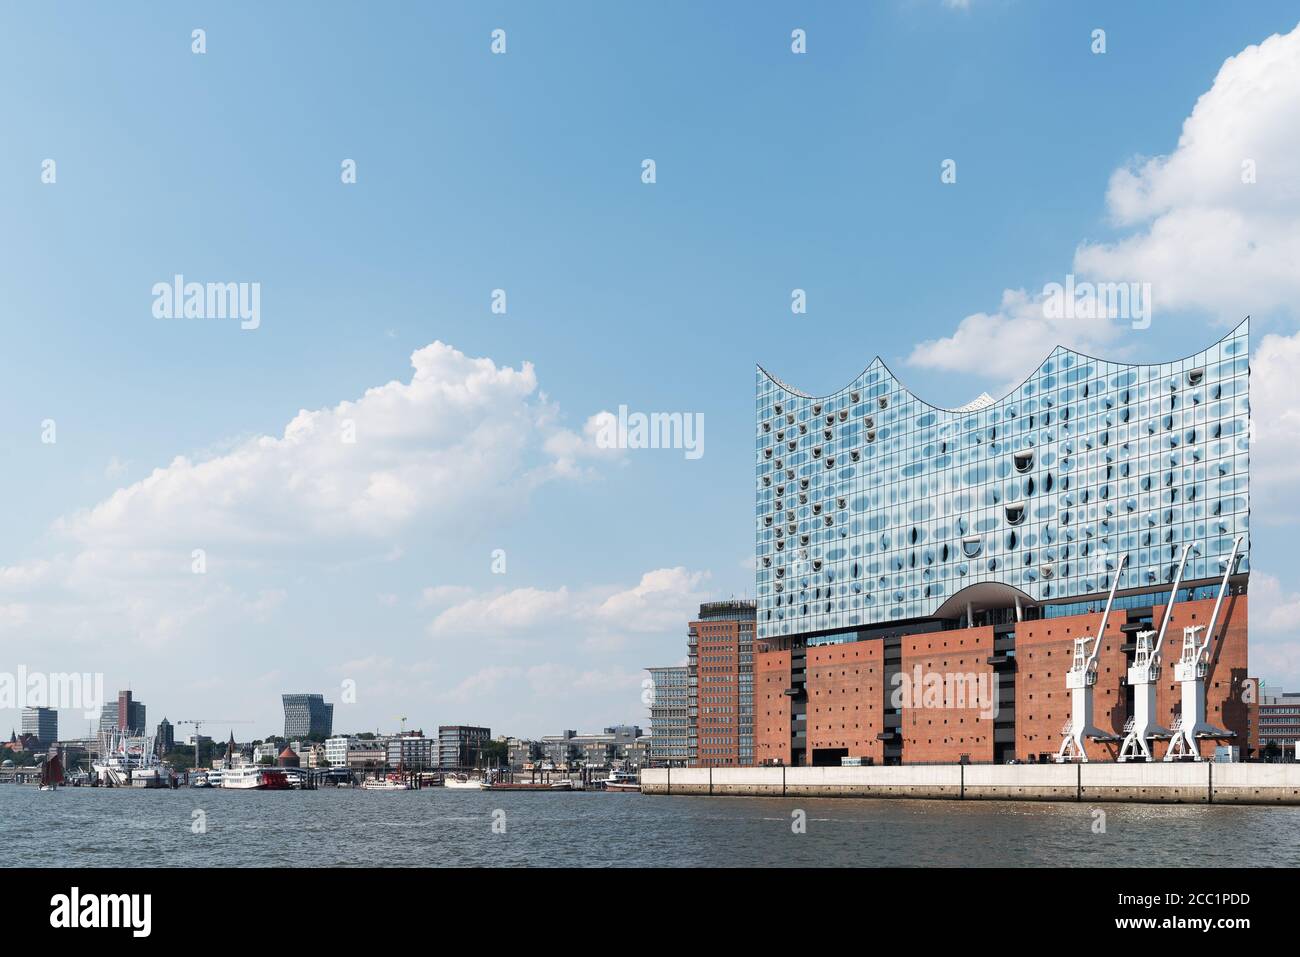 2020-08-16 Hamburg, Deutschland: Stadtbild mit Elbe, Uferpromenade und Elbphilharmonie-Konzertsaal vor schönem blauen Sommerhimmel Stockfoto